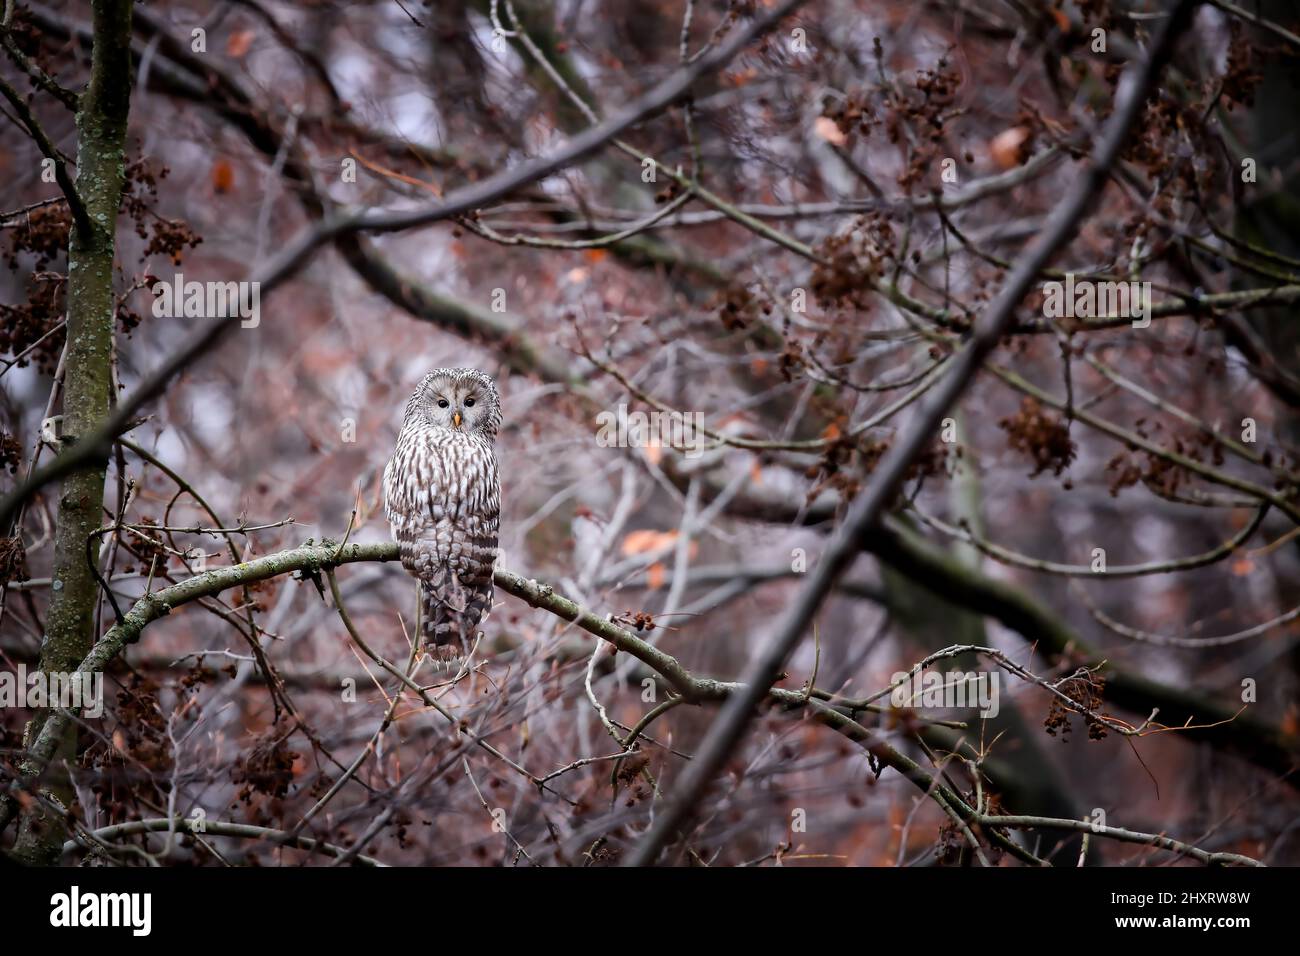 gufo ural, strix uralensis, seduto su un ramo in foresta ben nascosto grazie alle sue piume mimetizzazione. Mimicry in specie animali di fauna selvatica. Bird res Foto Stock